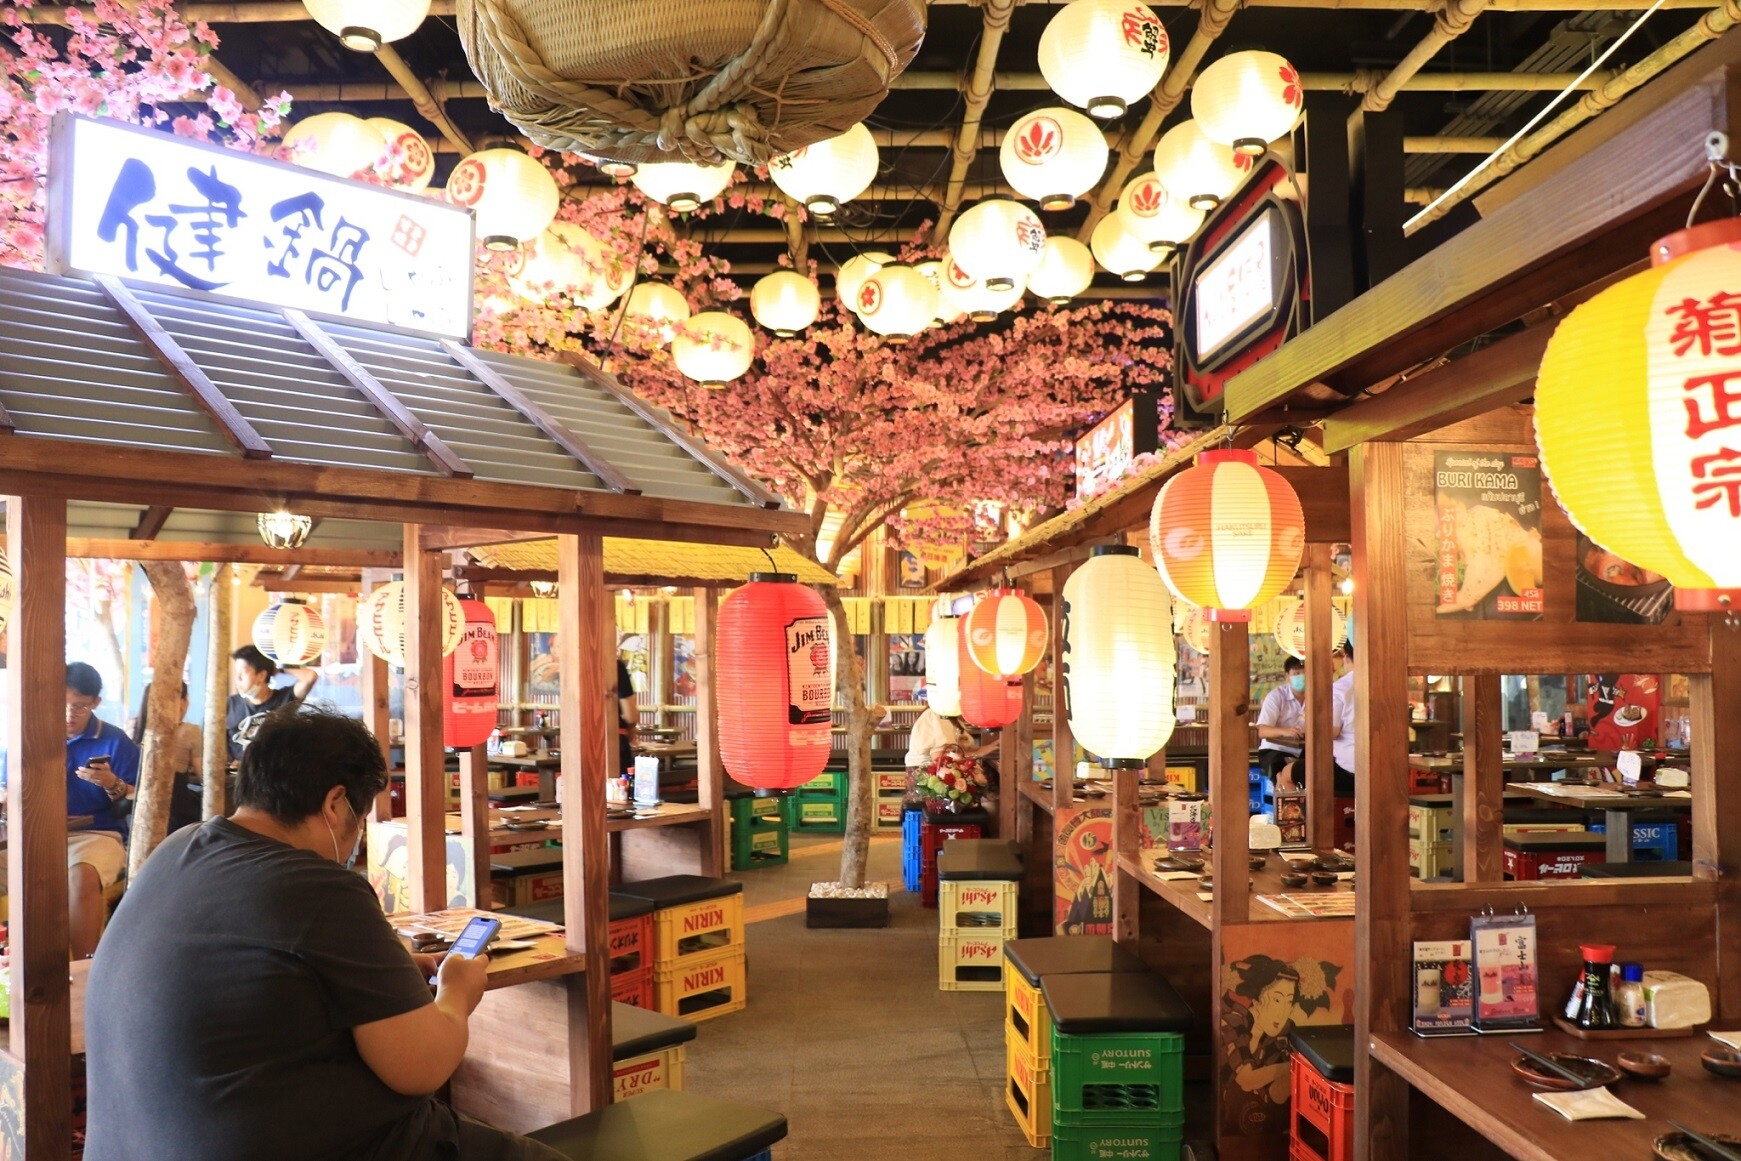 สังสรรค์ยามเย็น Kenshin Izakaya@MBK Center ร้านอาหารสไตล์ญี่ปุ่นบรรยากาศสุดคึกคัก